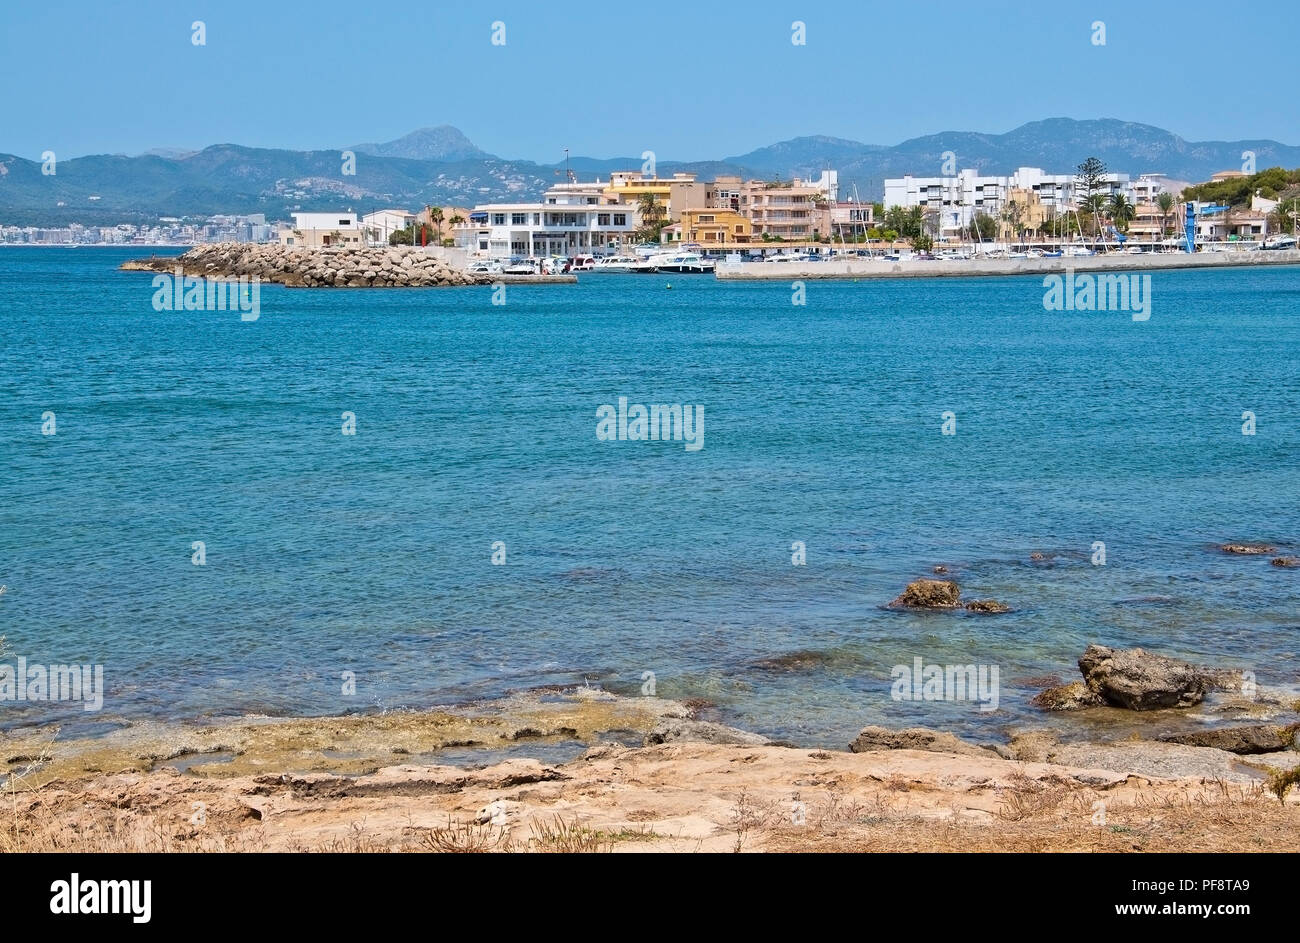 PALMA DE MALLORCA, SPAIN - JULY 21, 2012: Cala Gamba marina in rocky coastal landscape on July 21, 2012 in Mallorca, Spain. Stock Photo